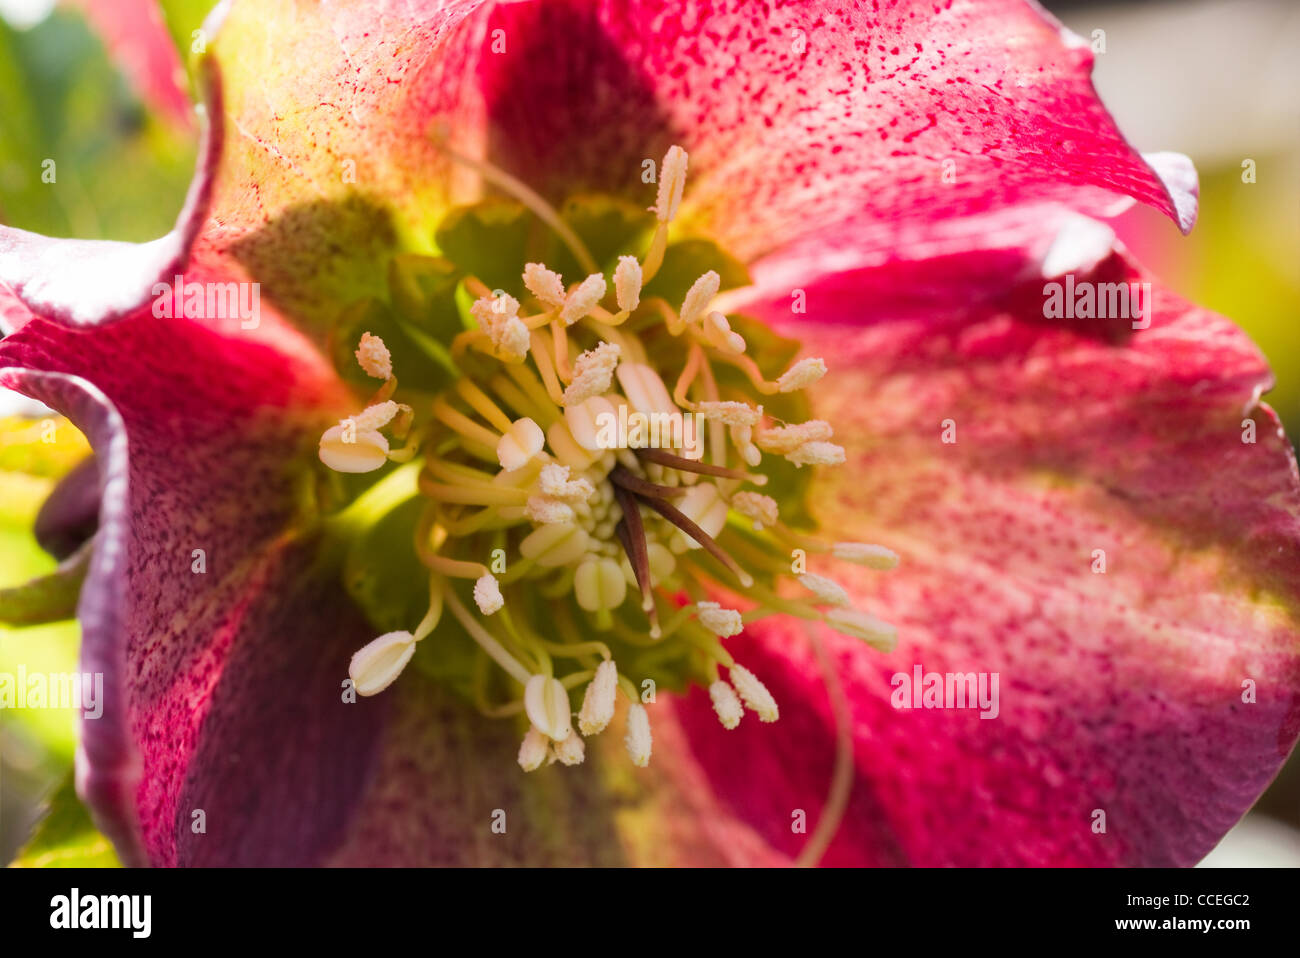 Flower of red Lenten hellebore or Helleborus orientalis blooming in spring sunshine Stock Photo